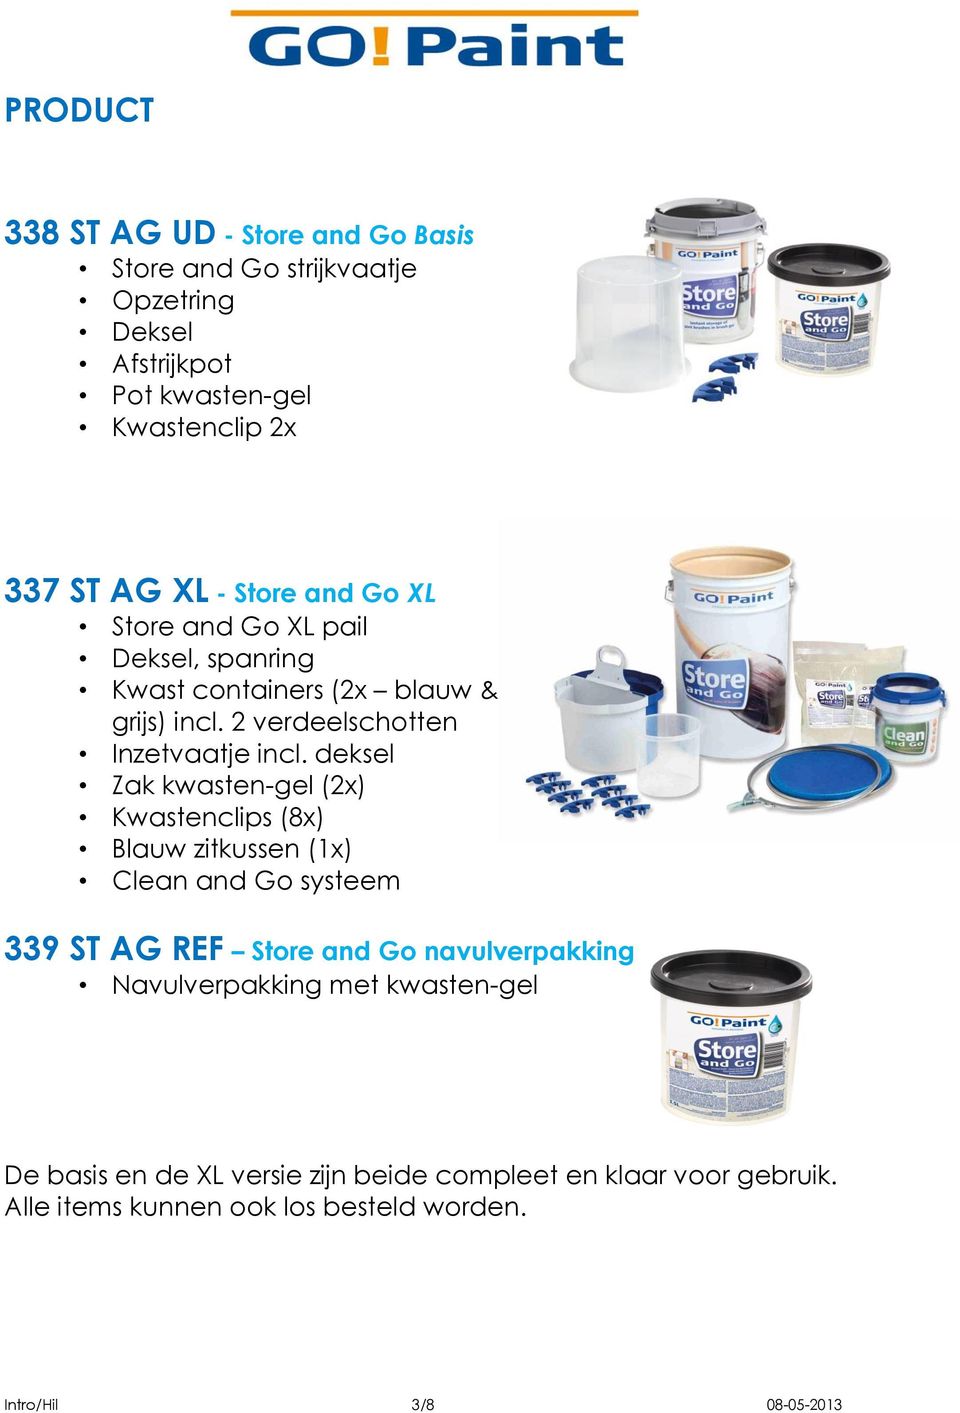 deksel Zak kwasten-gel (2x) Kwastenclips (8x) Blauw zitkussen (1x) Clean and Go systeem 339 ST AG REF Store and Go navulverpakking